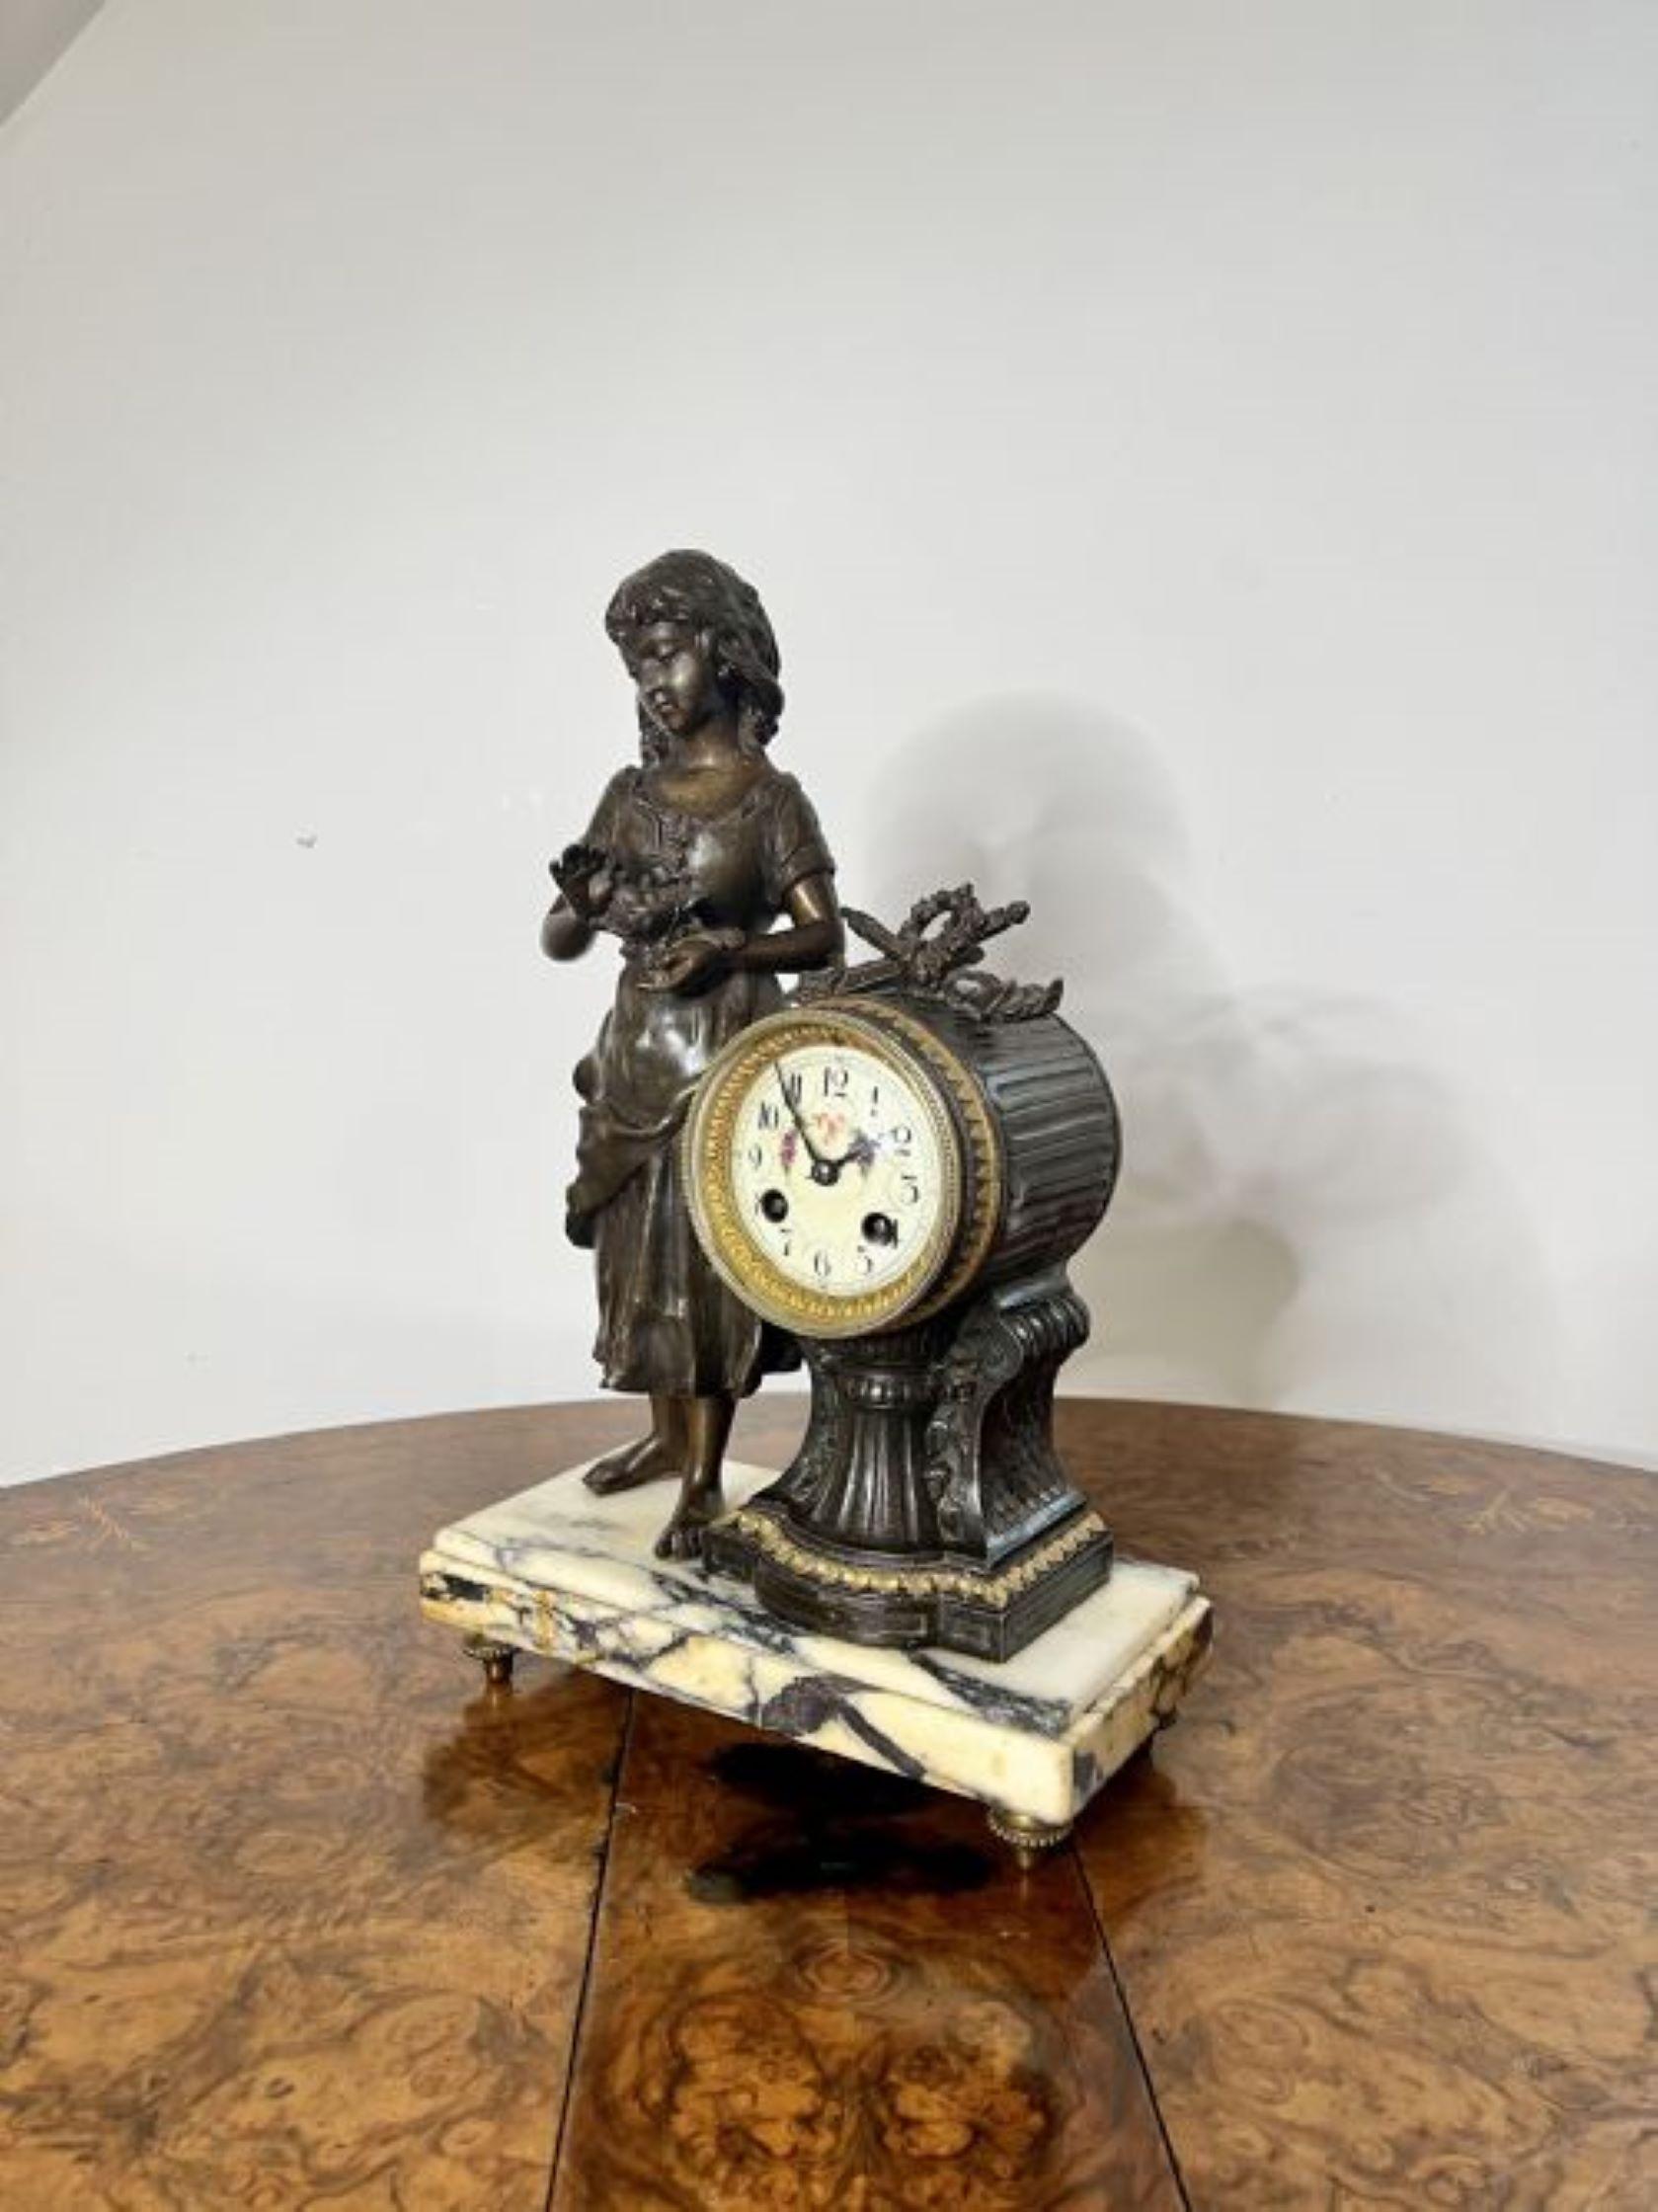 Hervorragende Qualität antiken viktorianischen Uhr Garnitur, mit Zinnfigur Dekoration mit einer Figur eines Mädchens hält ein Vogelnest, und zwei dekorierte Seite Urnen, mit einem kreisförmigen Porzellan floral Zifferblatt mit arabischen Ziffern,